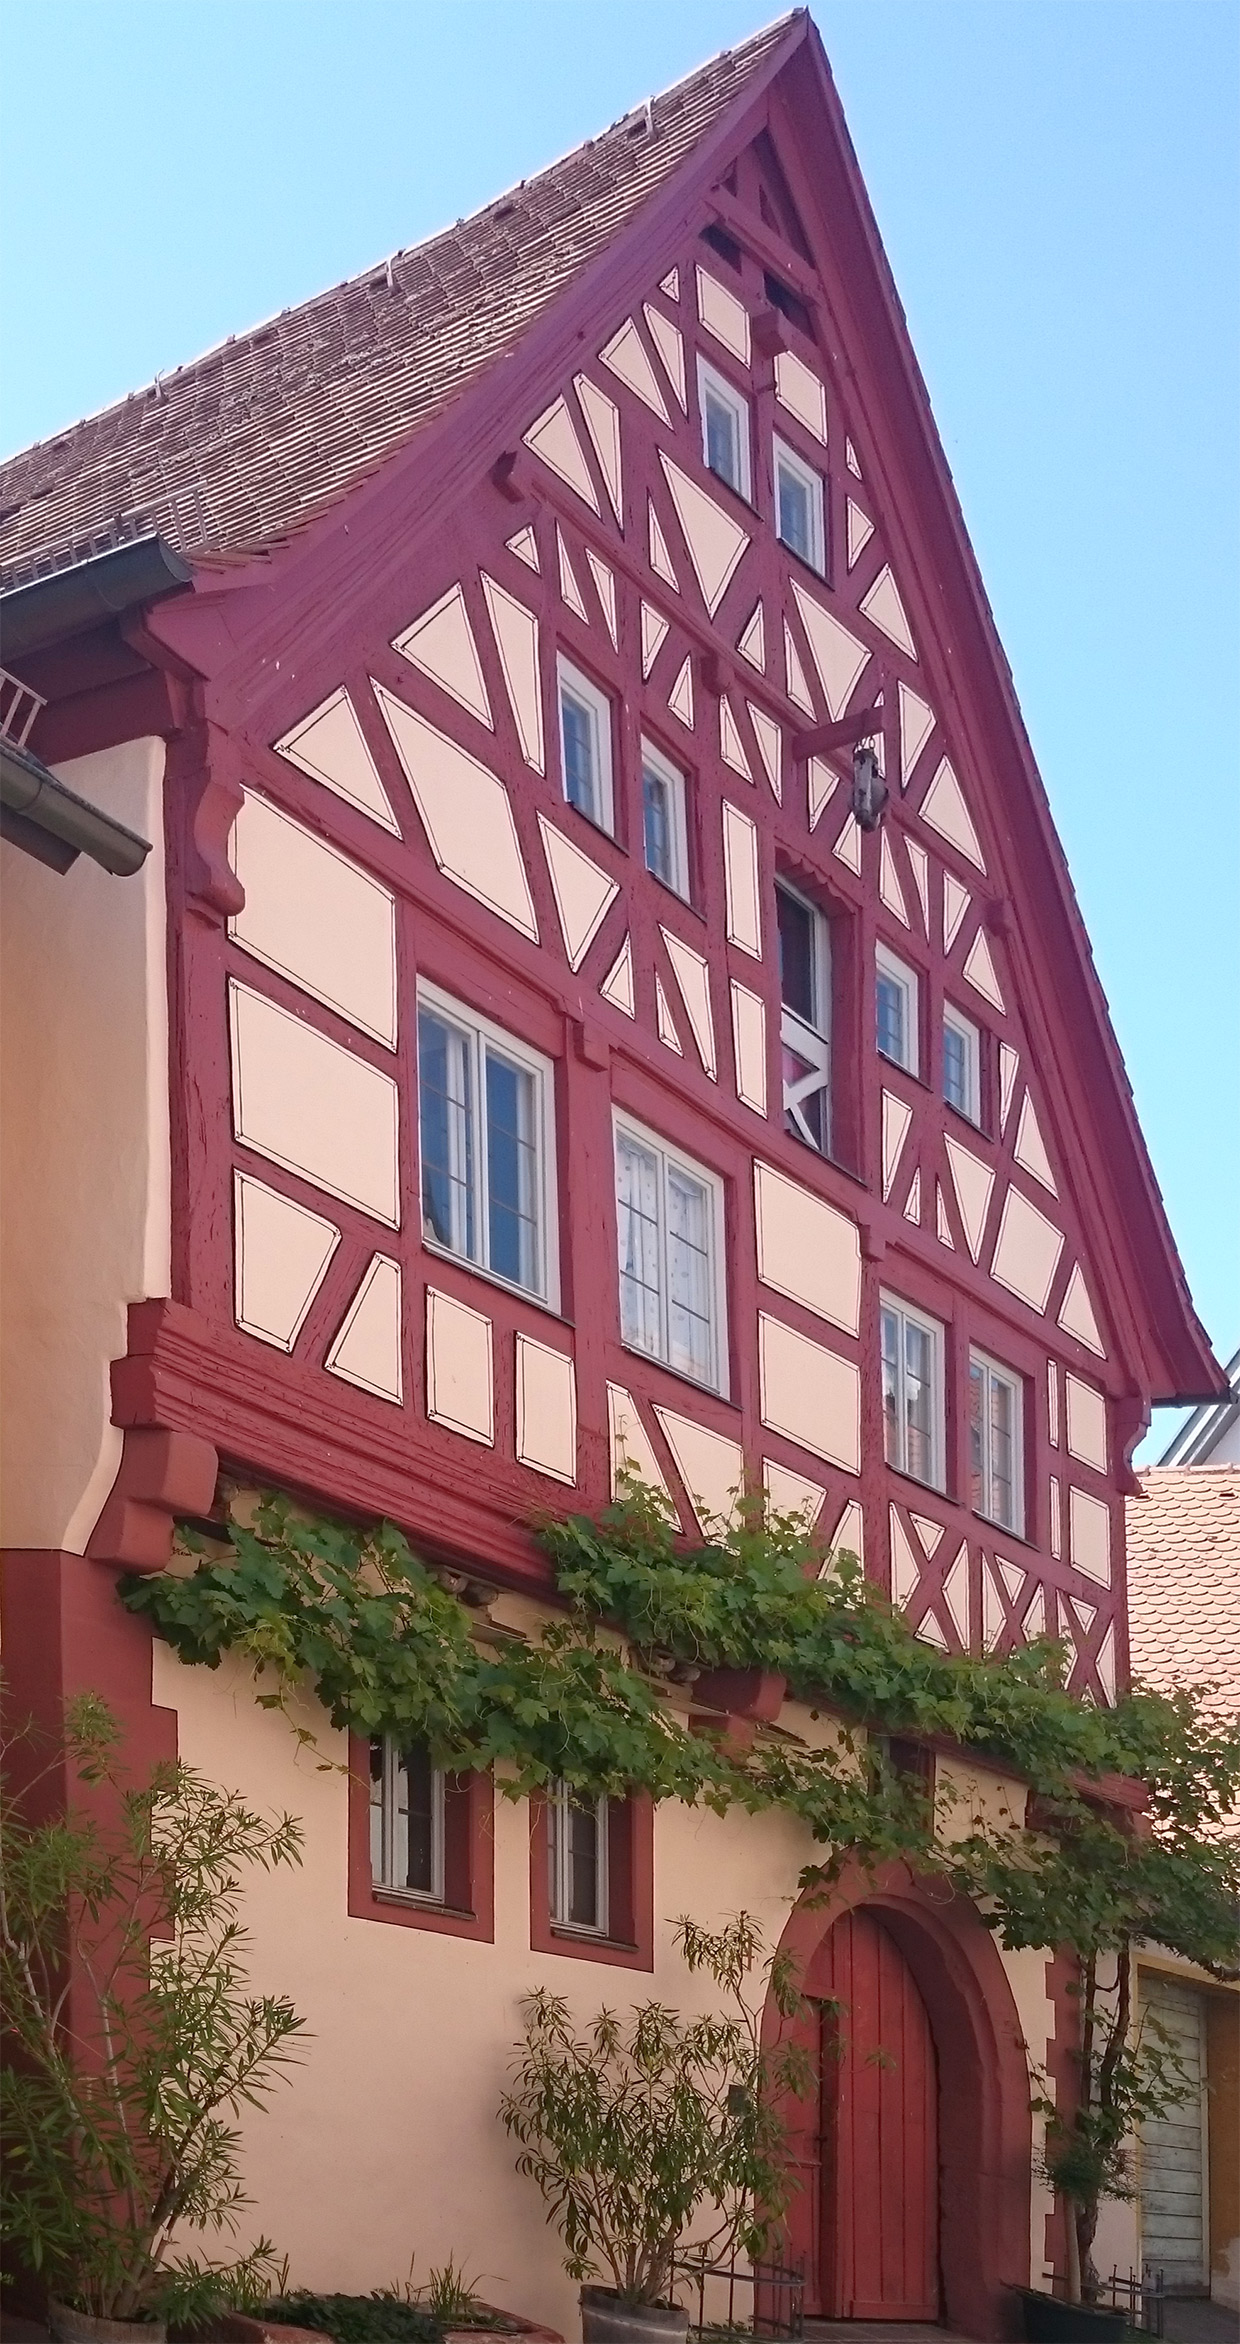 "Marktschifferhaus"